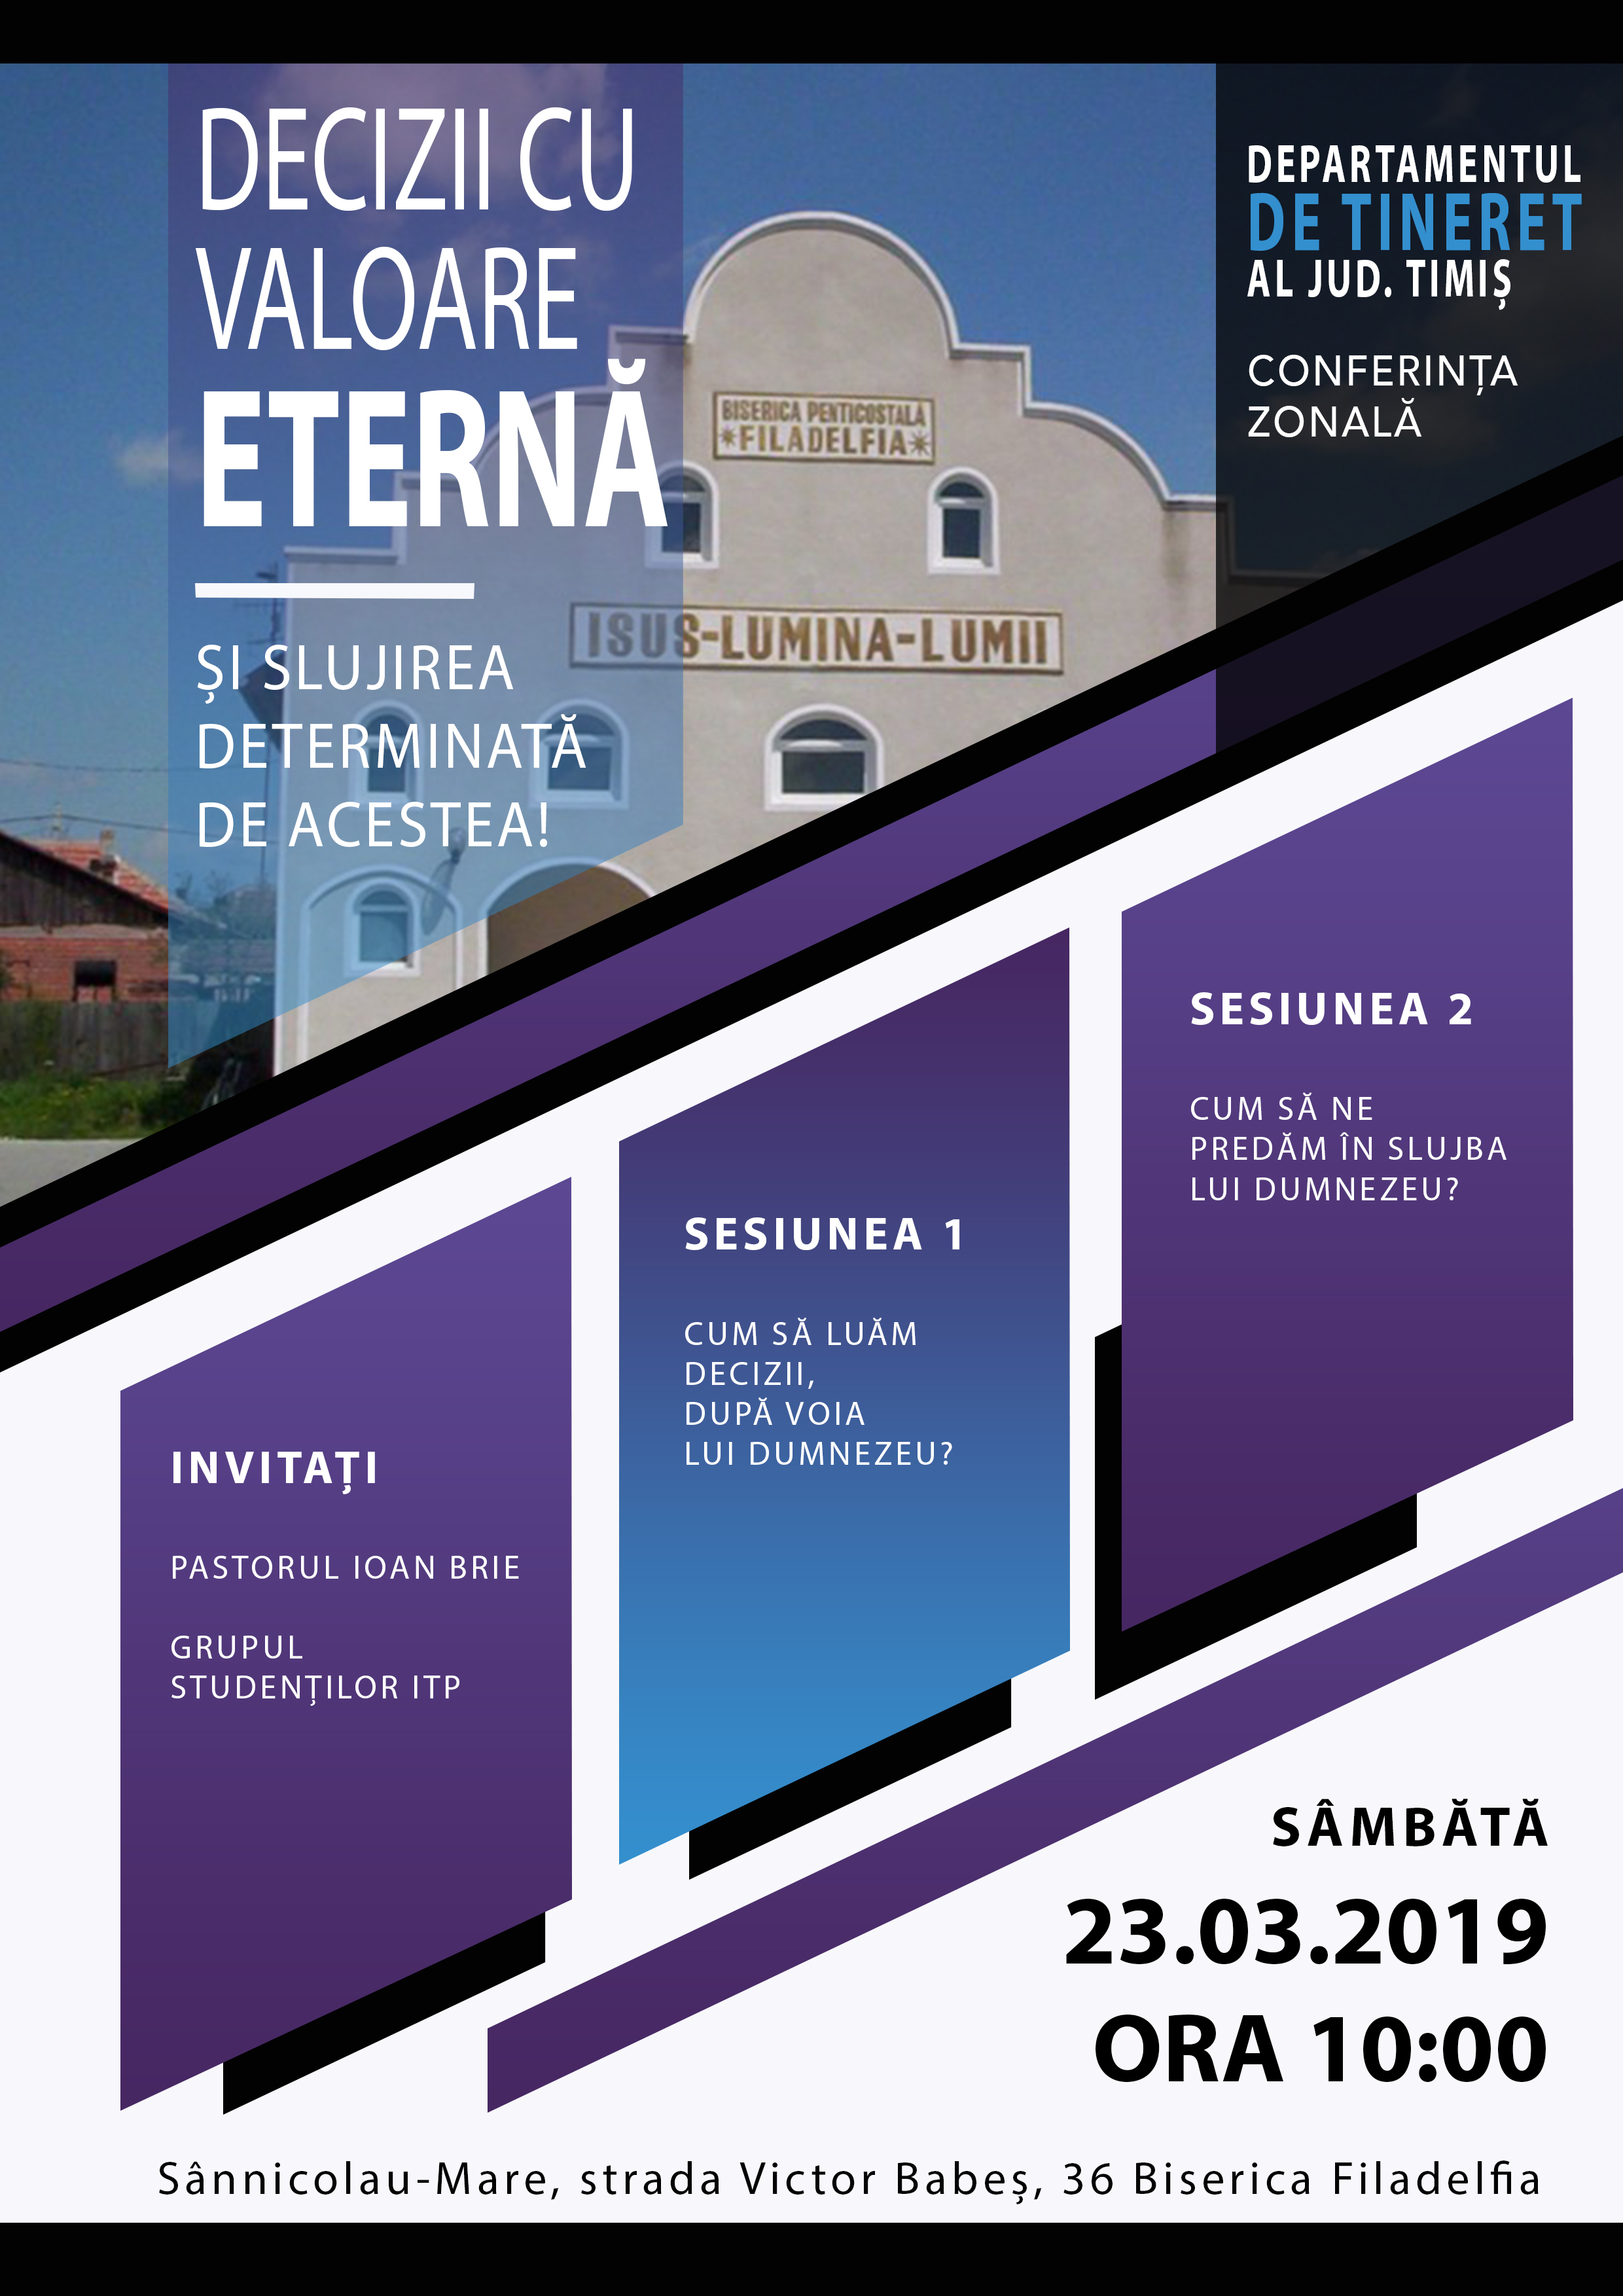 Conferință Zonală la Sânnicolau Mare: Decizii cu valoare eterna și slujirea determinată de acestea!